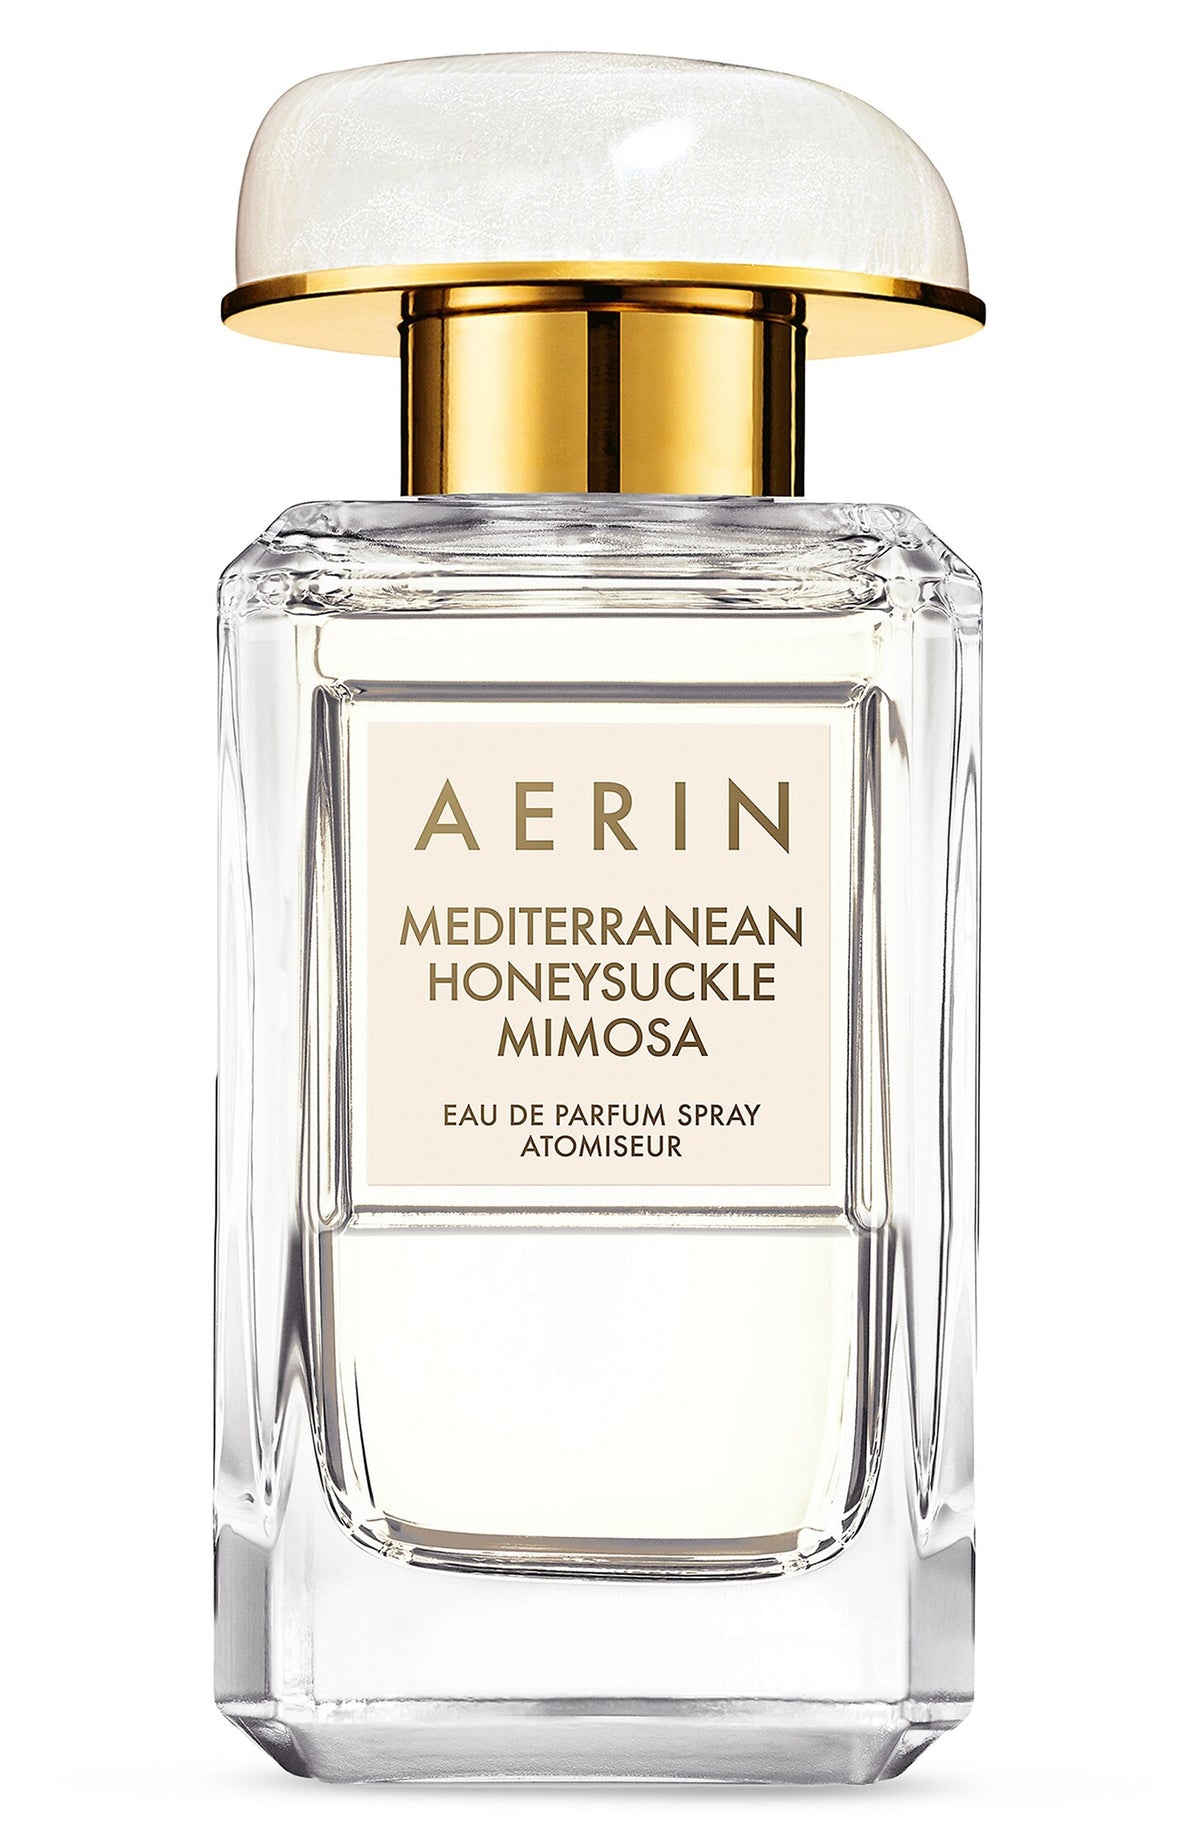 AERIN Mediterranean Honeysuckle Mimosa Eau de Parfum Spray 1.7 oz